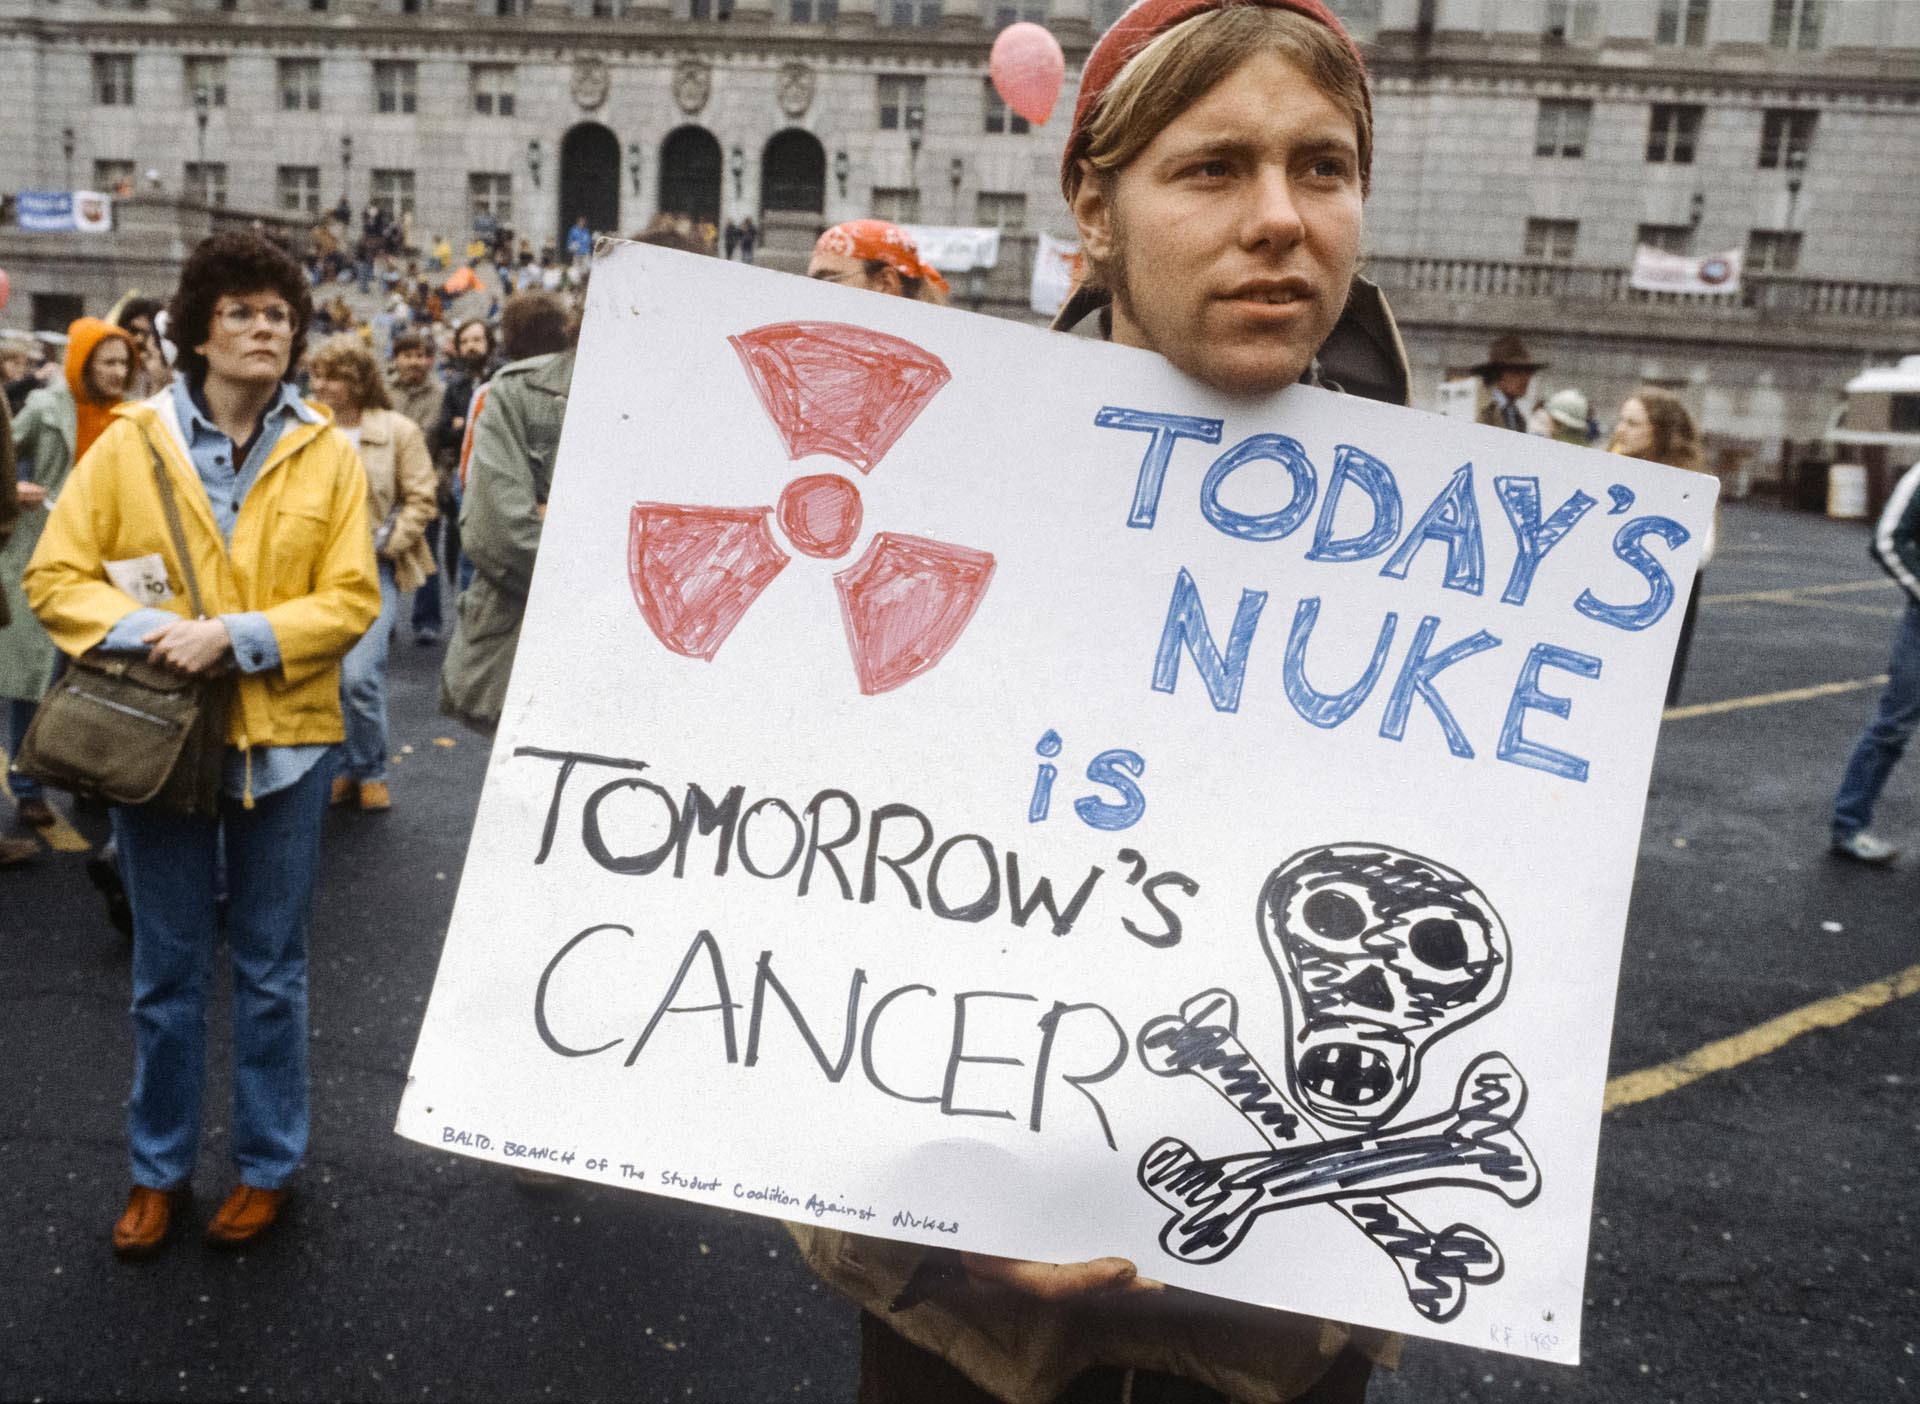 Un joven asiste a la manifestación contra la energía nuclear, en Washington DC, el 6 de mayo de 1979. Sostiene un cartel que dice: "La bomba nuclear de hoy es el cáncer de mañana". La manifestación, que atrajo a más de 125.000 participantes, fue una de una serie de grandes protestas realizadas a raíz de la fusión parcial del reactor en la Estación de Generación Nuclear Three Mile Island de Pensilvania a principios de ese año (Leif Skoogfors/Corbis vía Getty Images)
